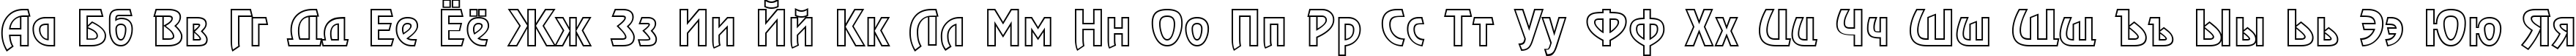 Пример написания русского алфавита шрифтом a_RewinderOtl